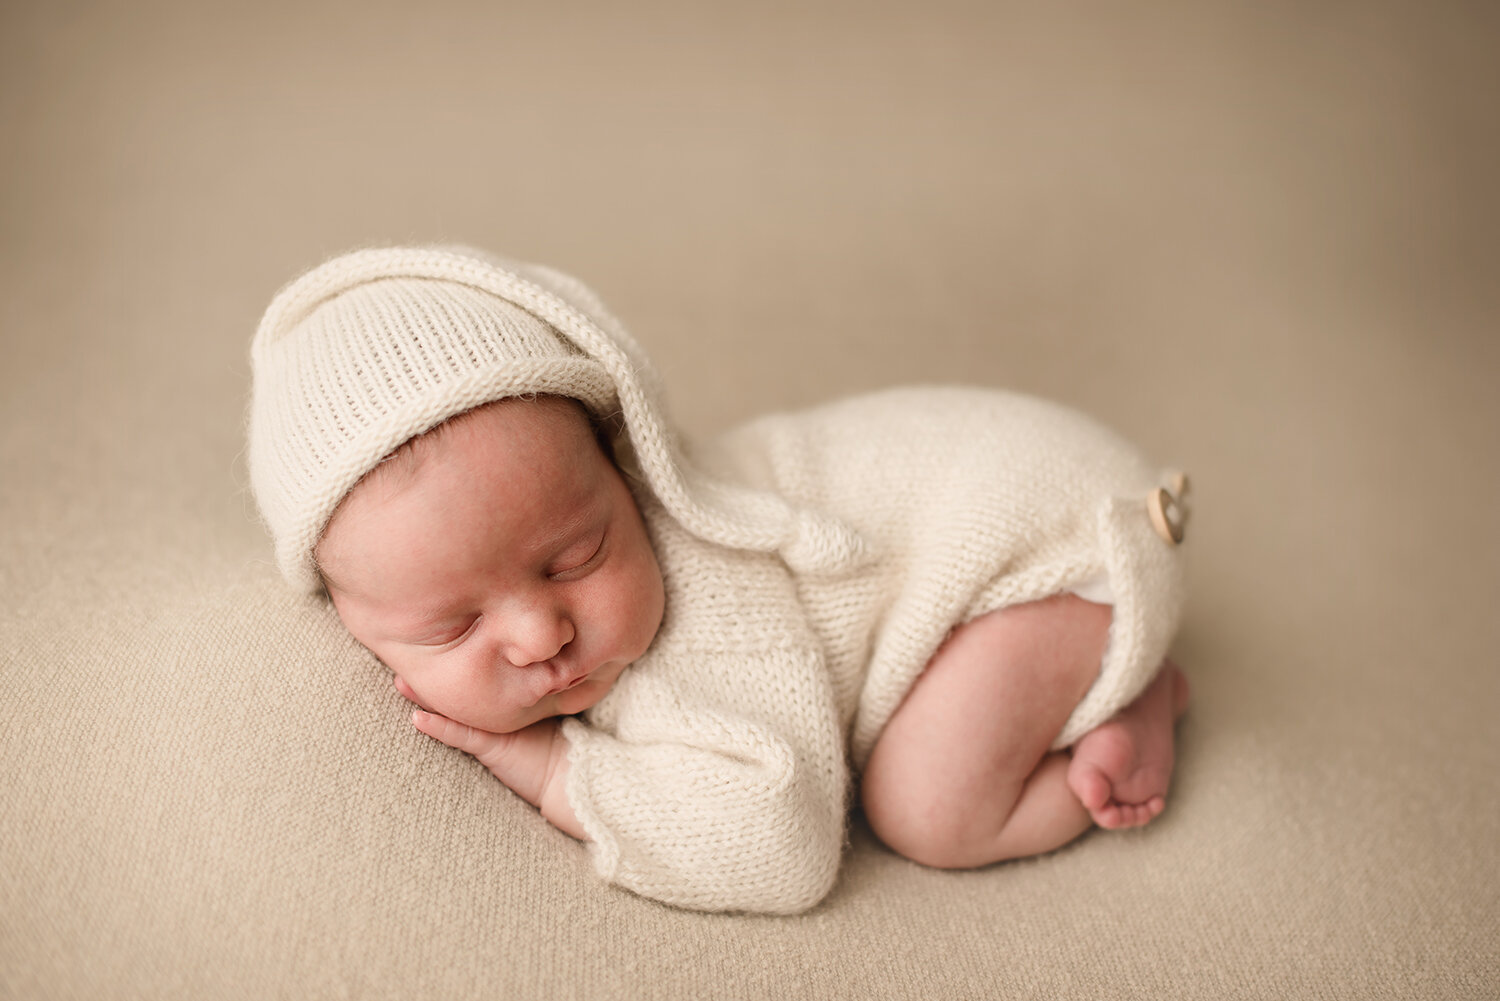 hilliard-newborn-photographer-barebabyphotography.jpg